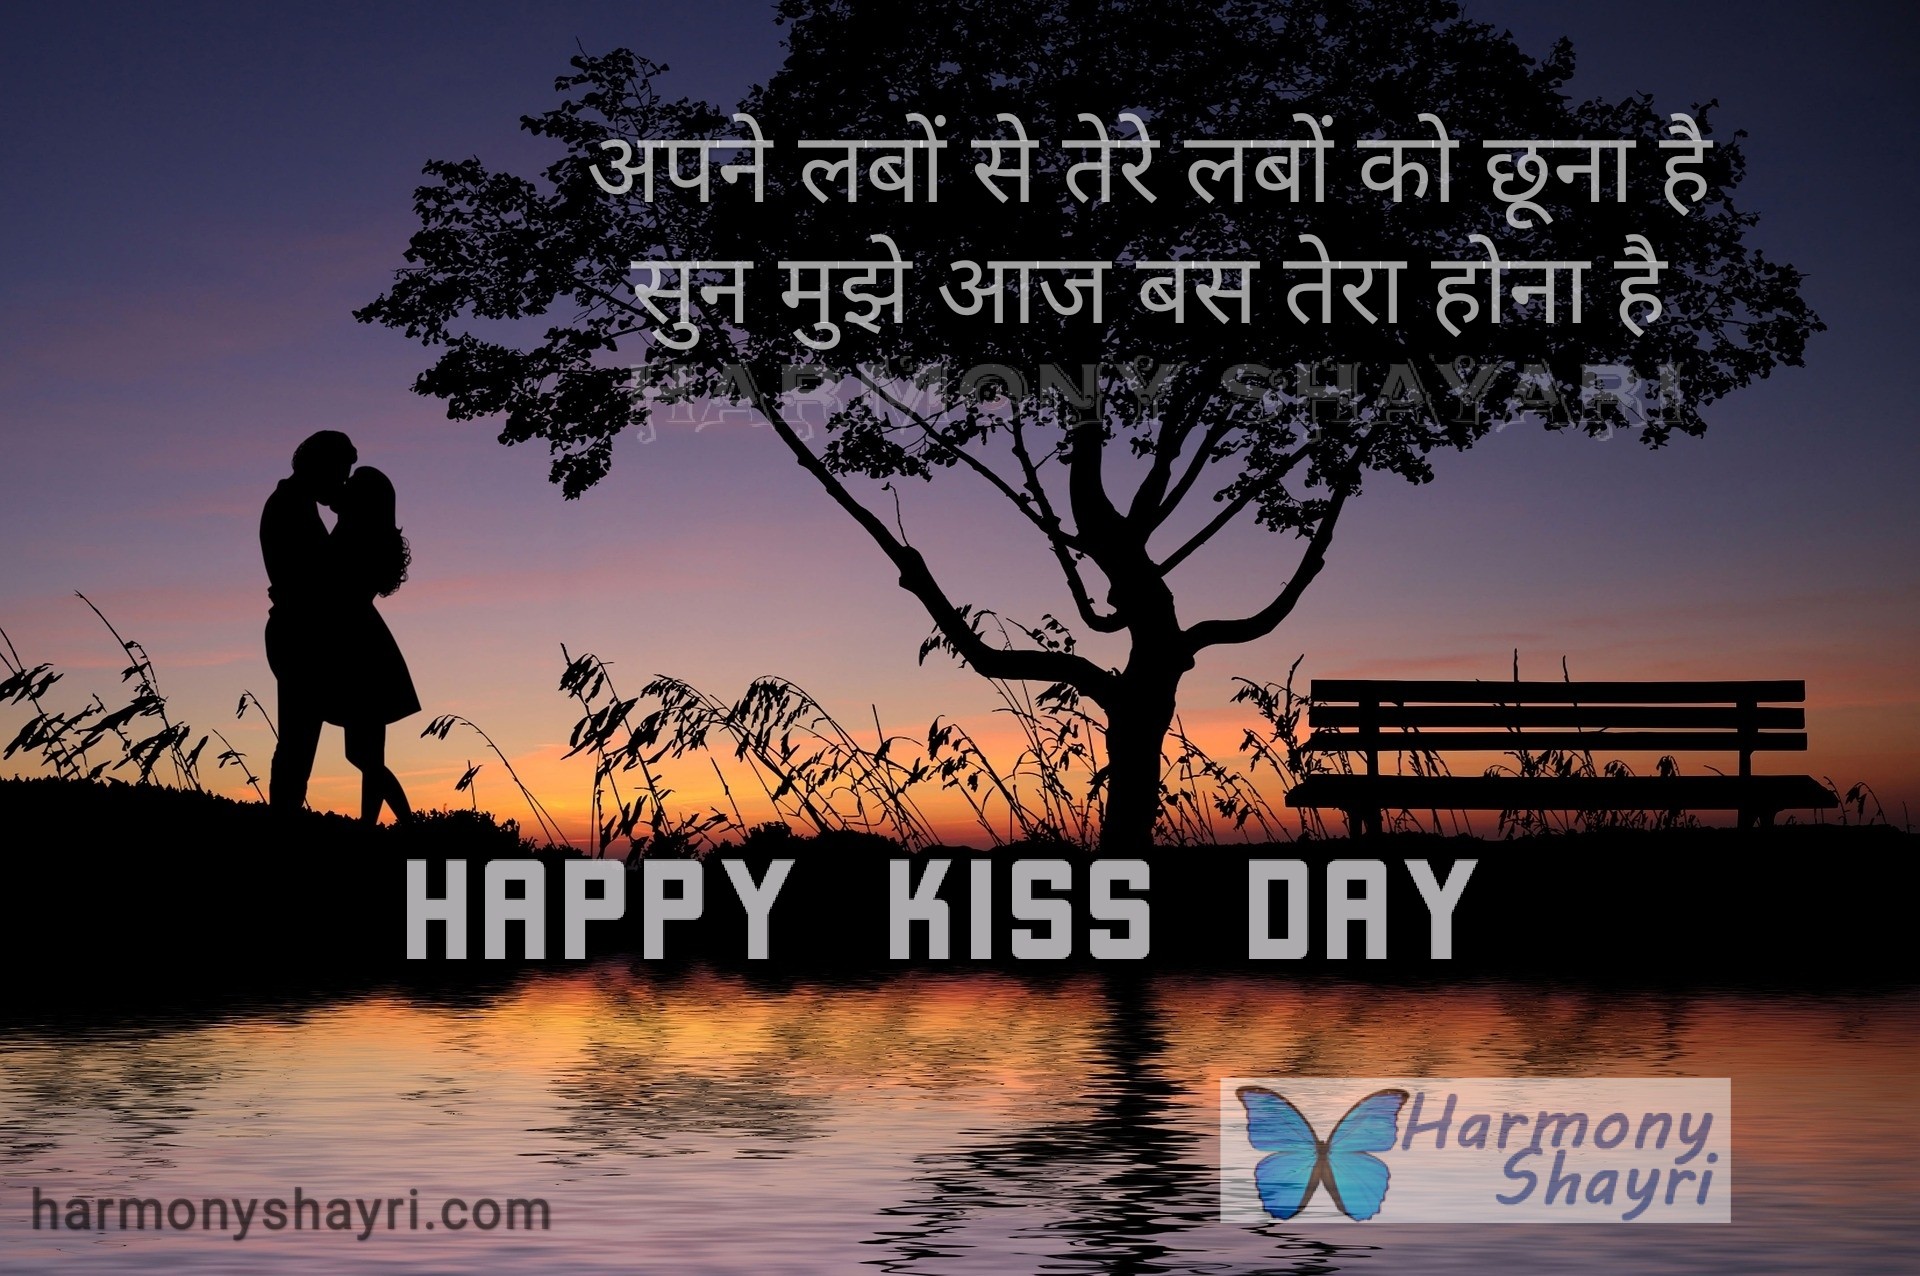 Apne labon se tere labon ko chhoona hai – Happy Kiss Day